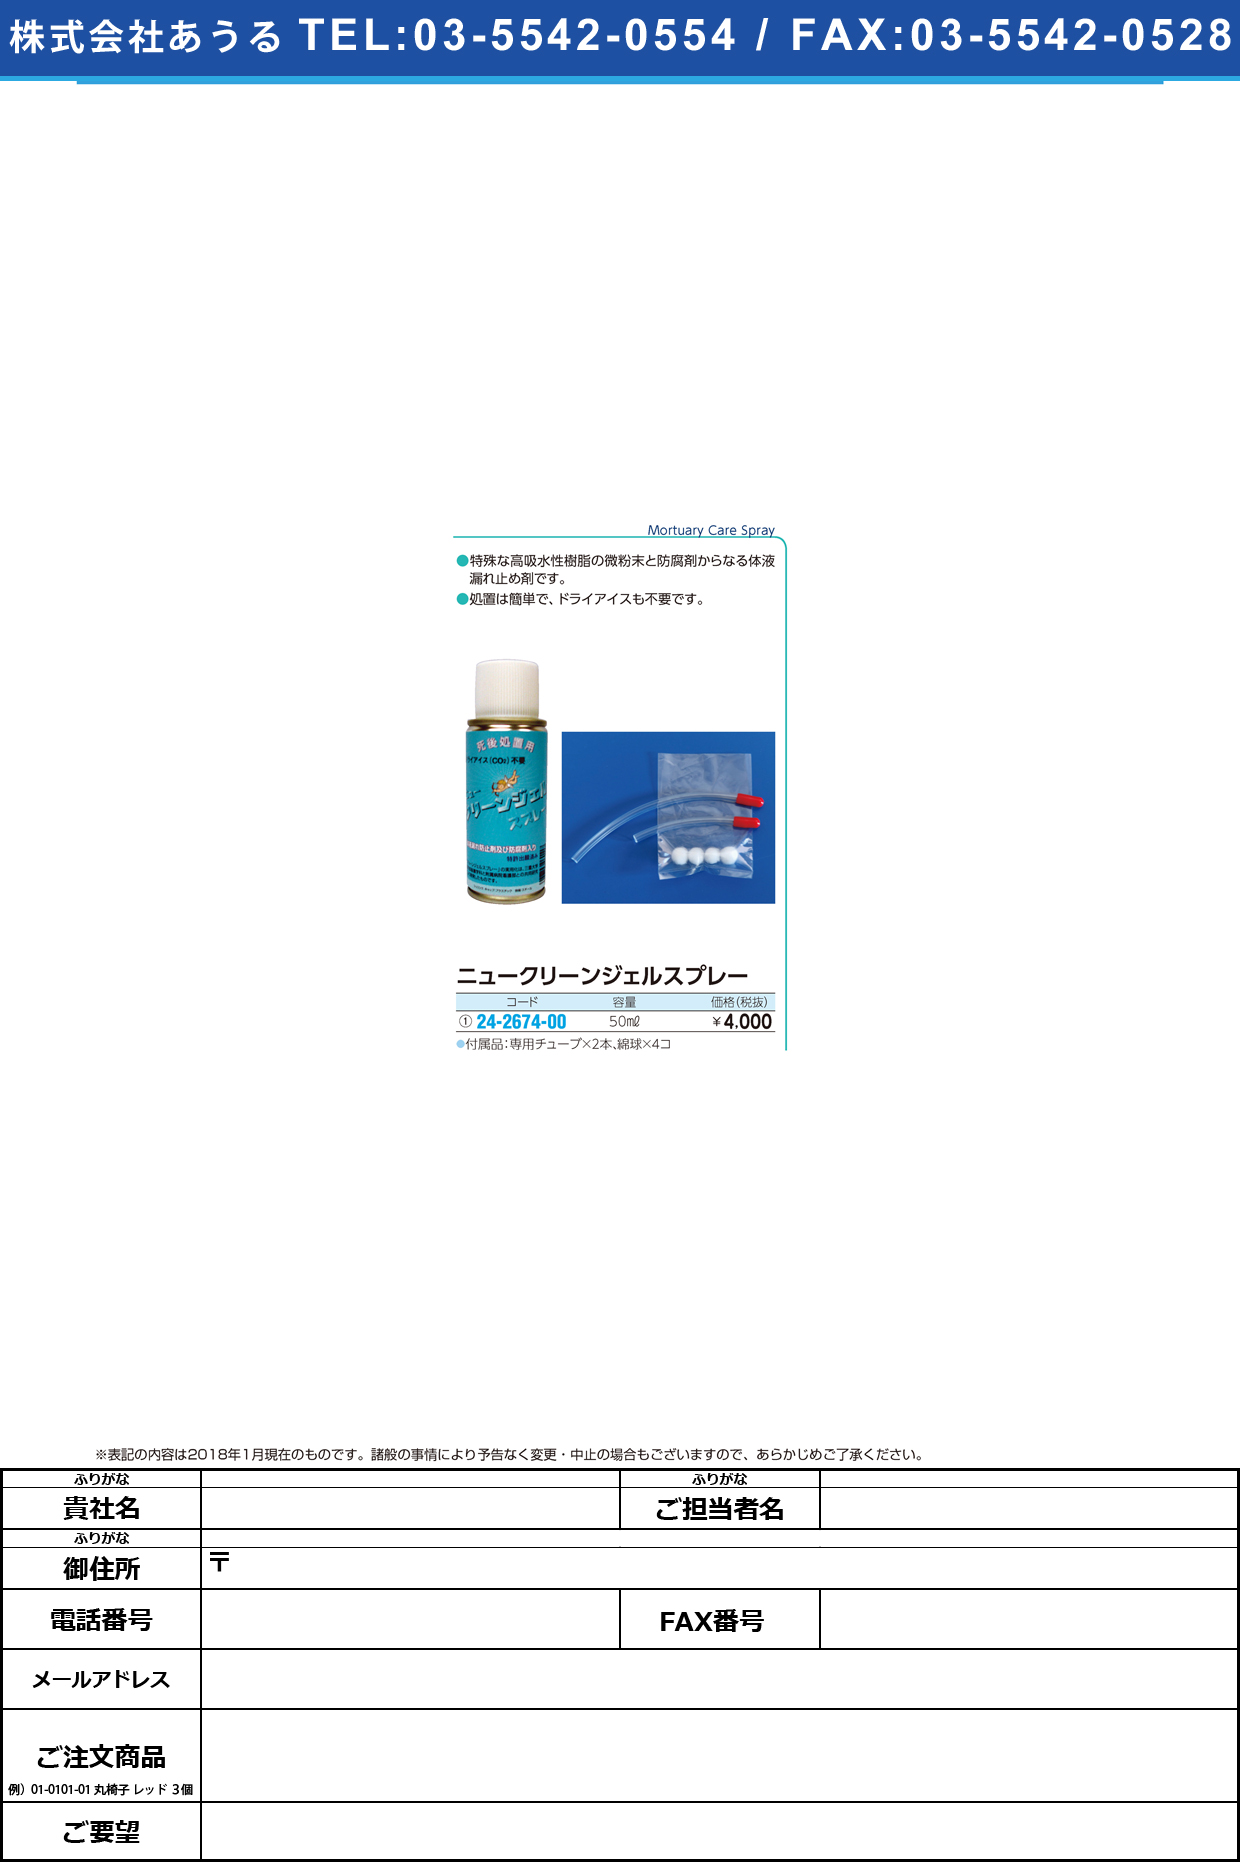 (24-2674-00)ニュークリーンジェルスプレー 50ML ﾆｭｰｸﾘｰﾝｼﾞｪﾙｽﾌﾟﾚｰ(白十字)【1本単位】【2018年カタログ商品】